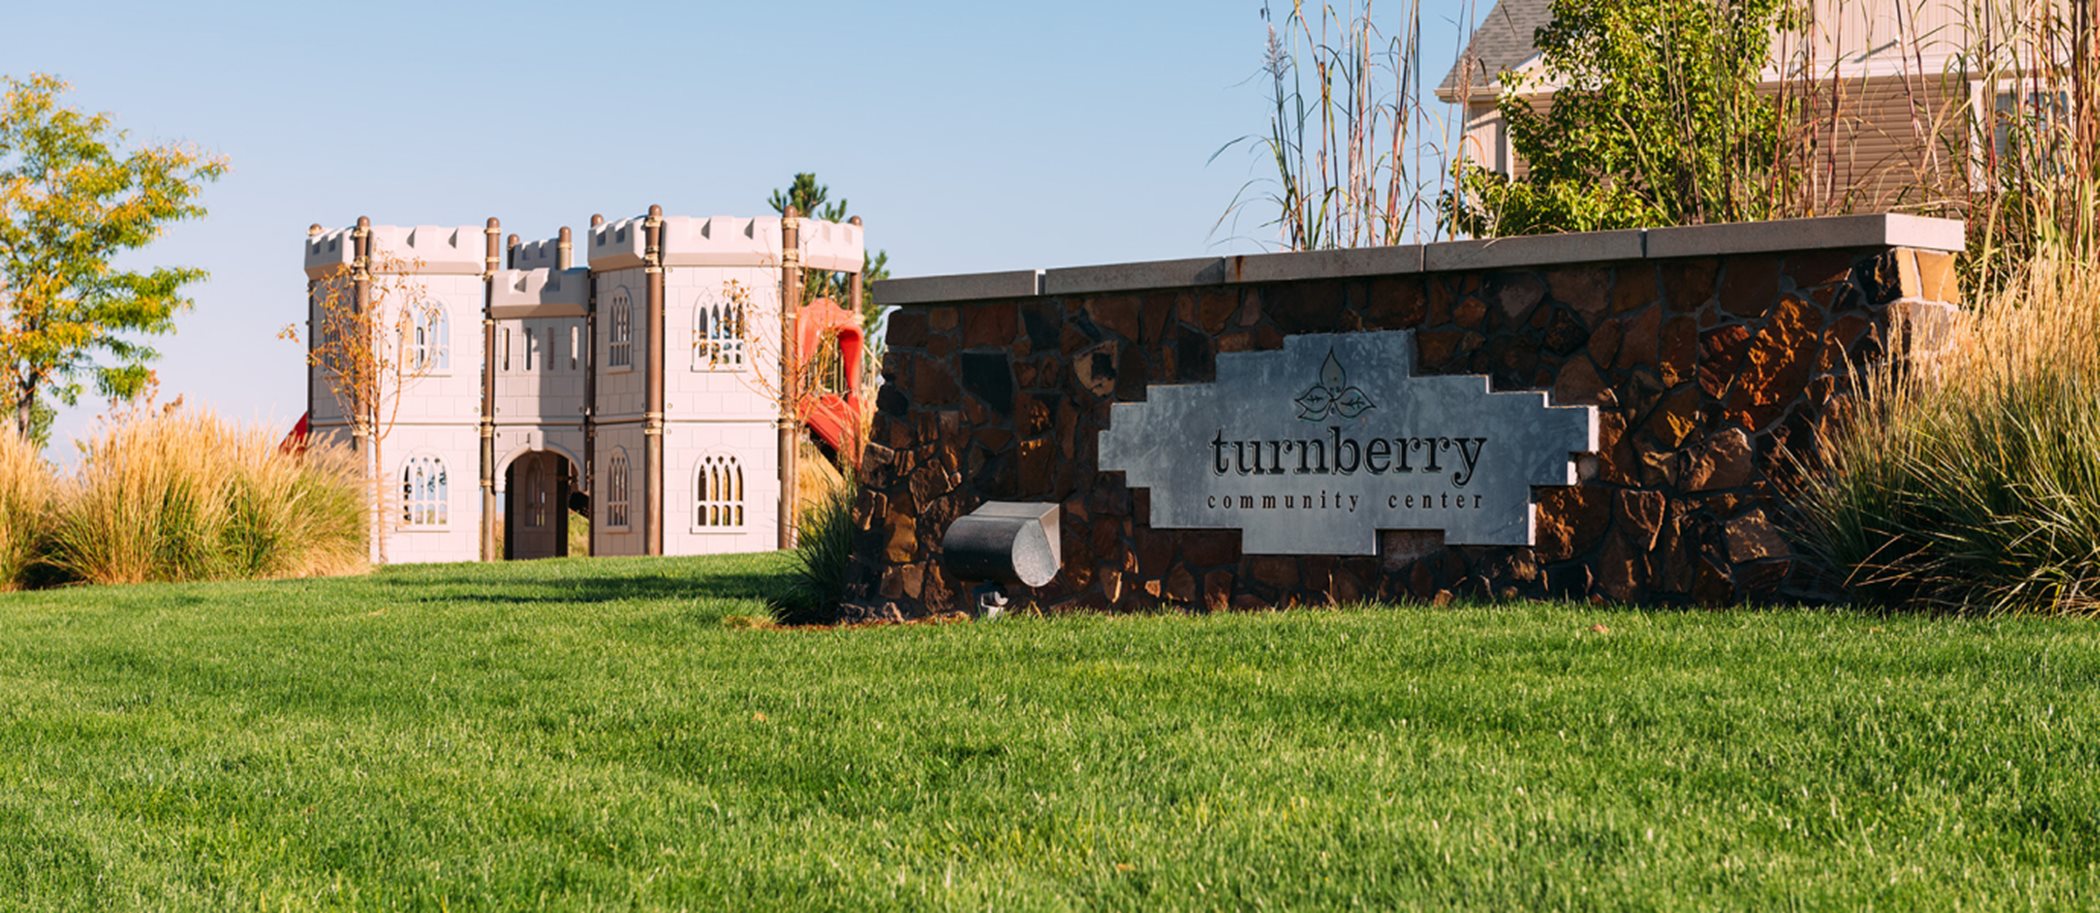 Turnberry outside of Denver, CO new single family homes